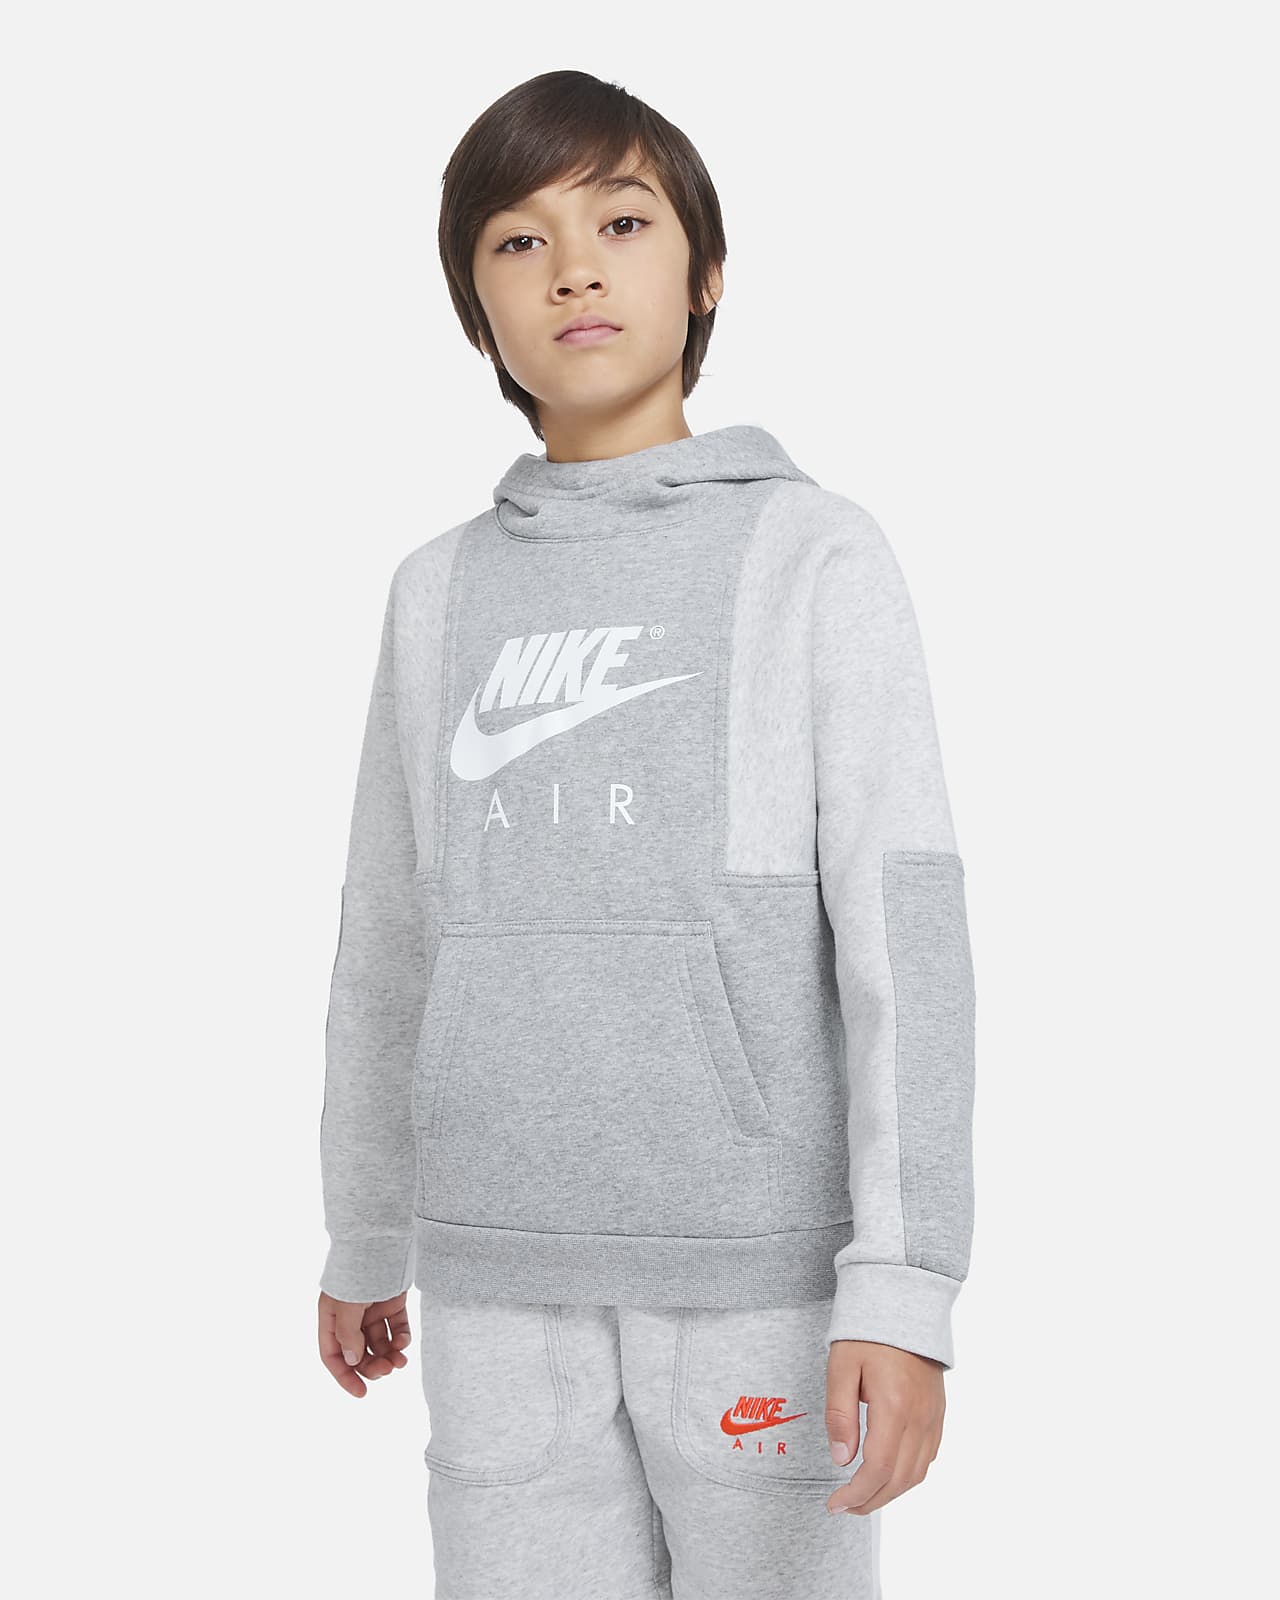 Nike Air Big Kids' (Boys') Pullover Hoodie